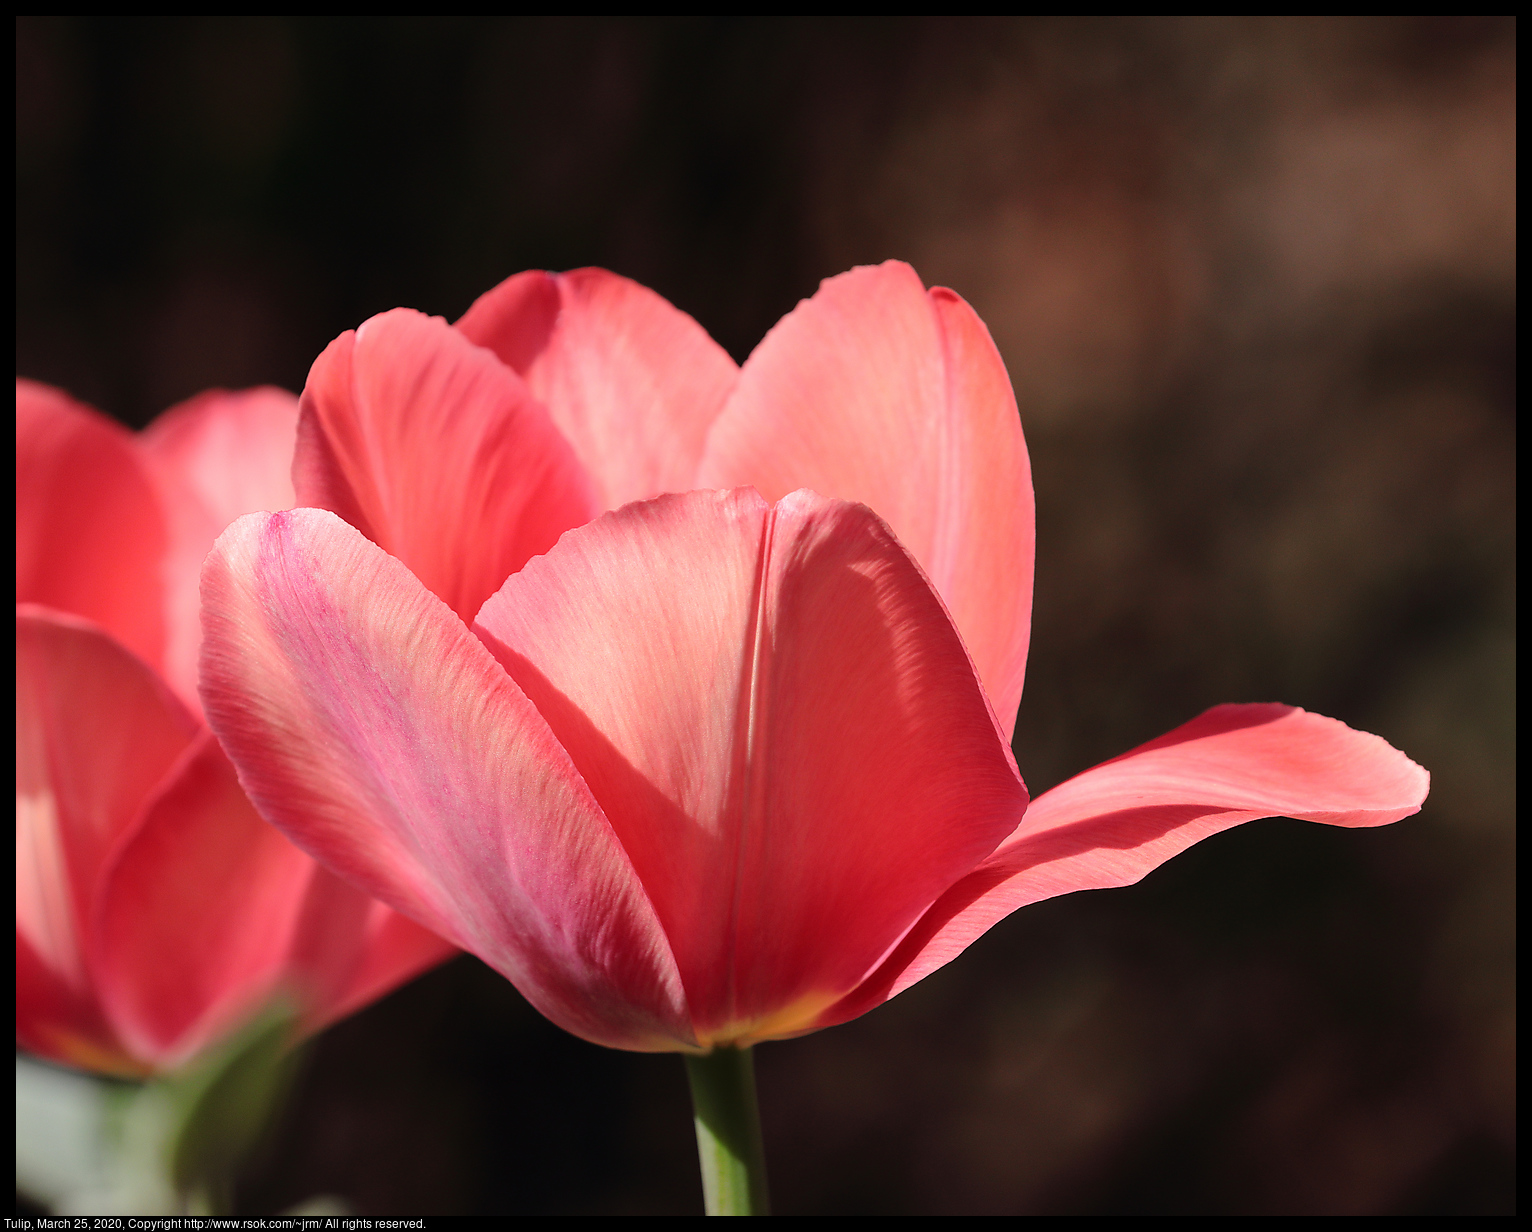 Tulip, March 25, 2020